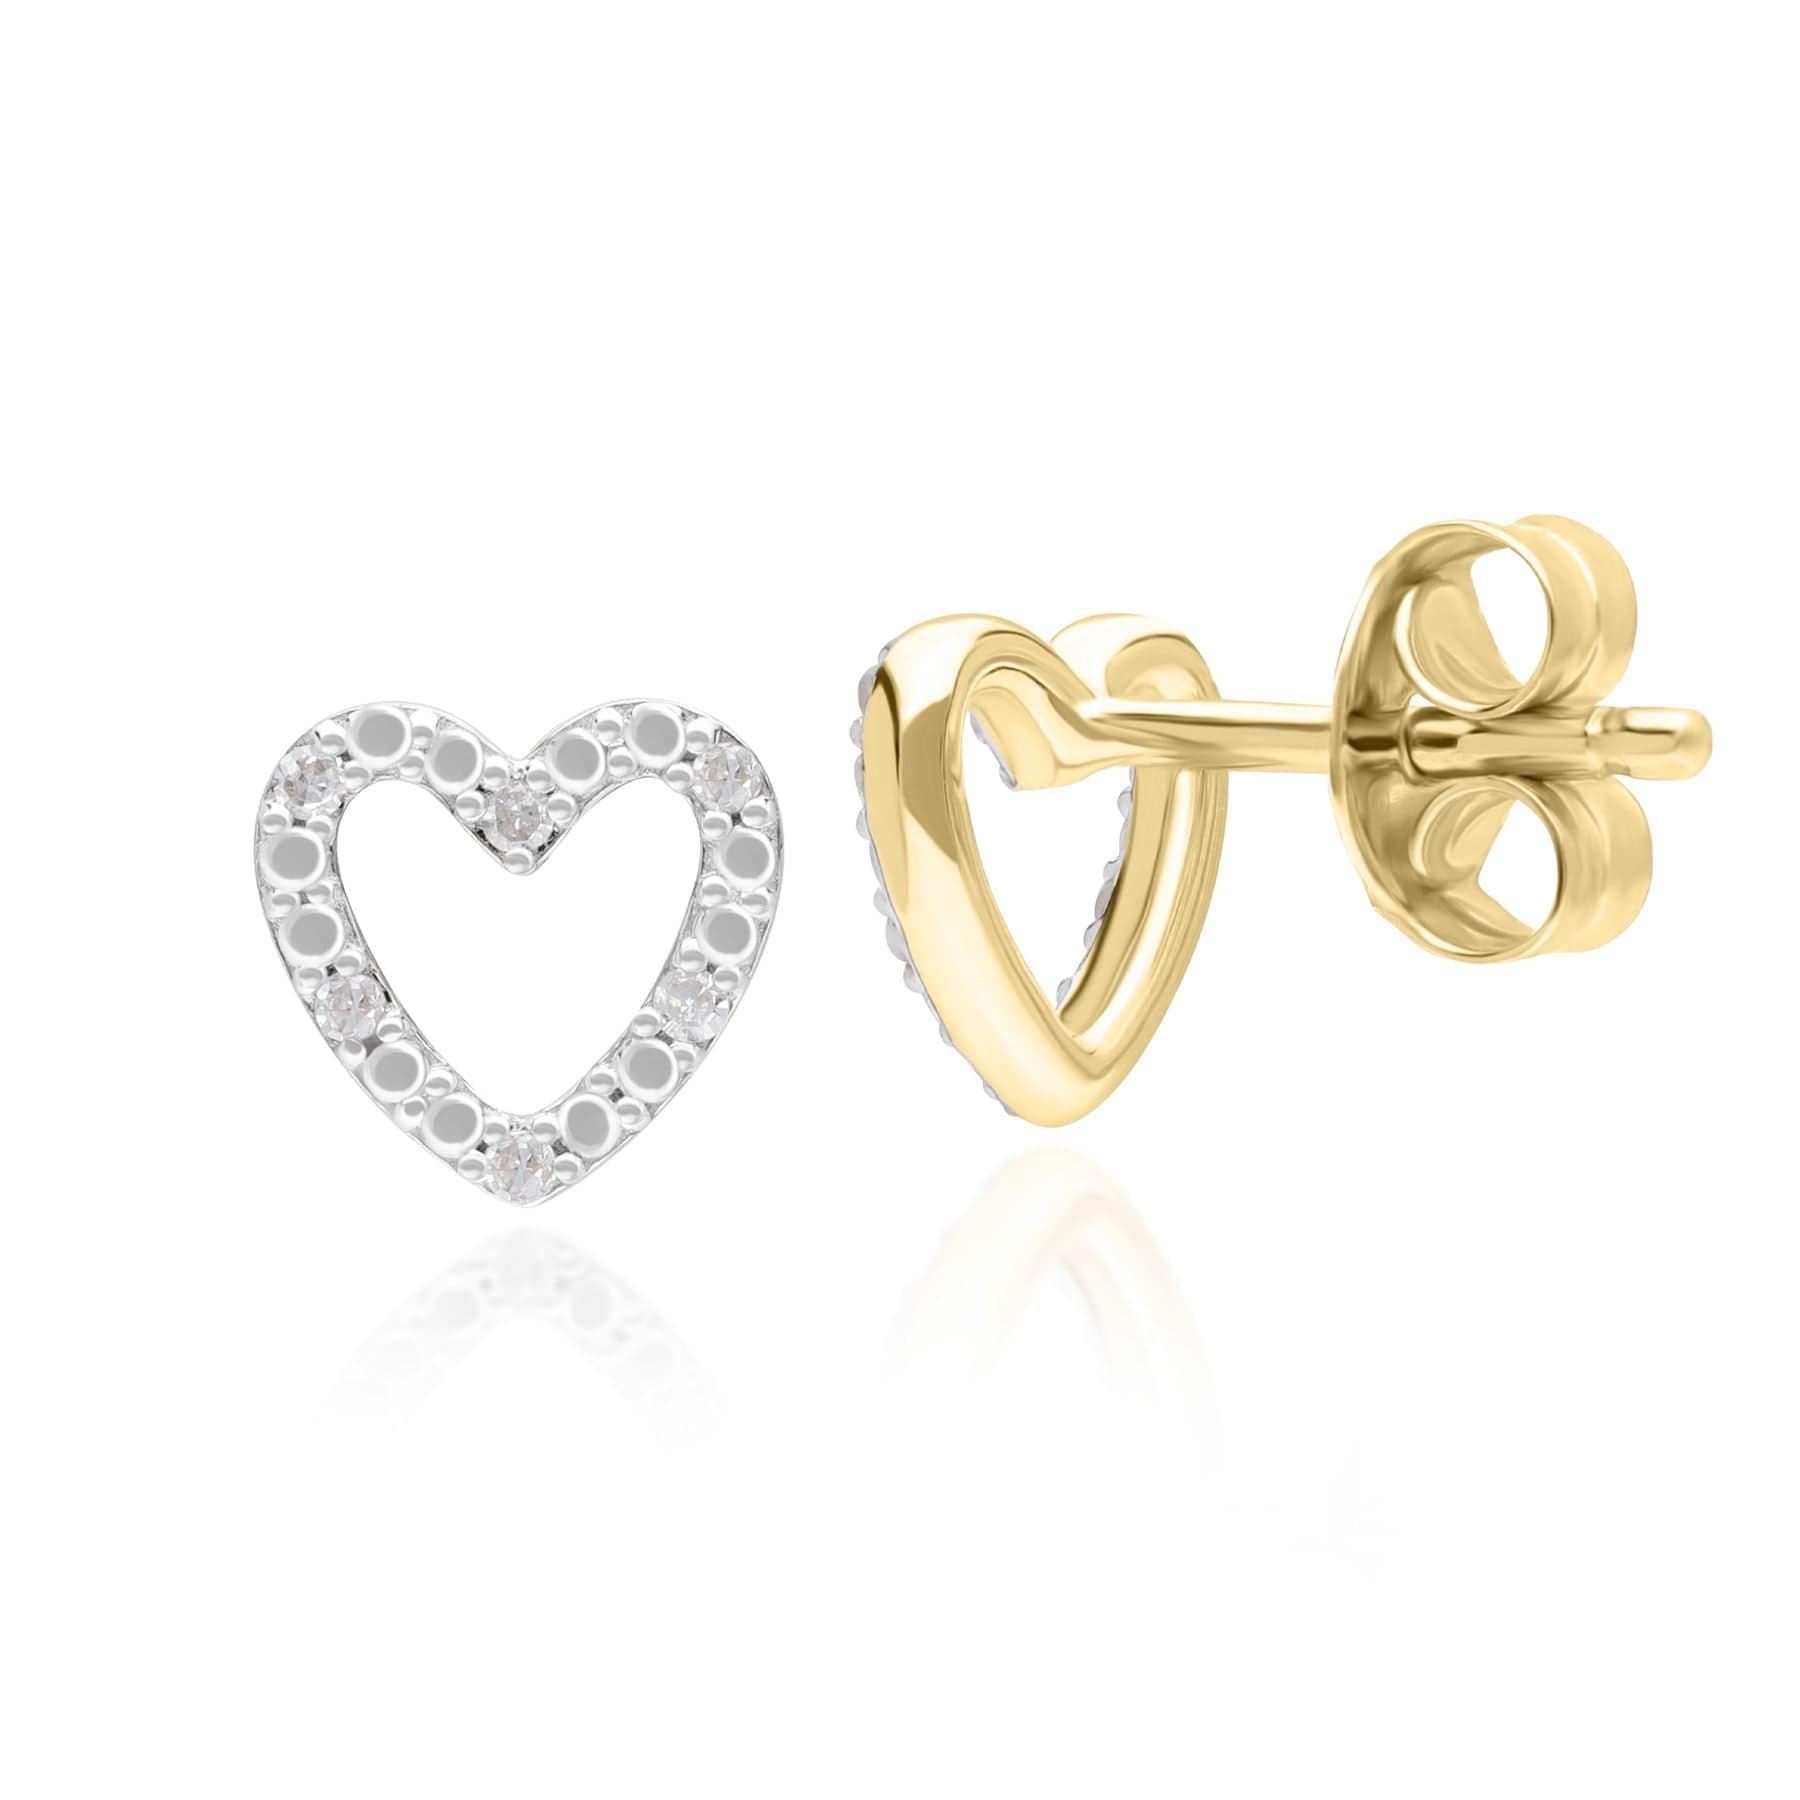 191E0432019 Diamond Love Heart Stud Earrings in 9ct Yellow Gold Side